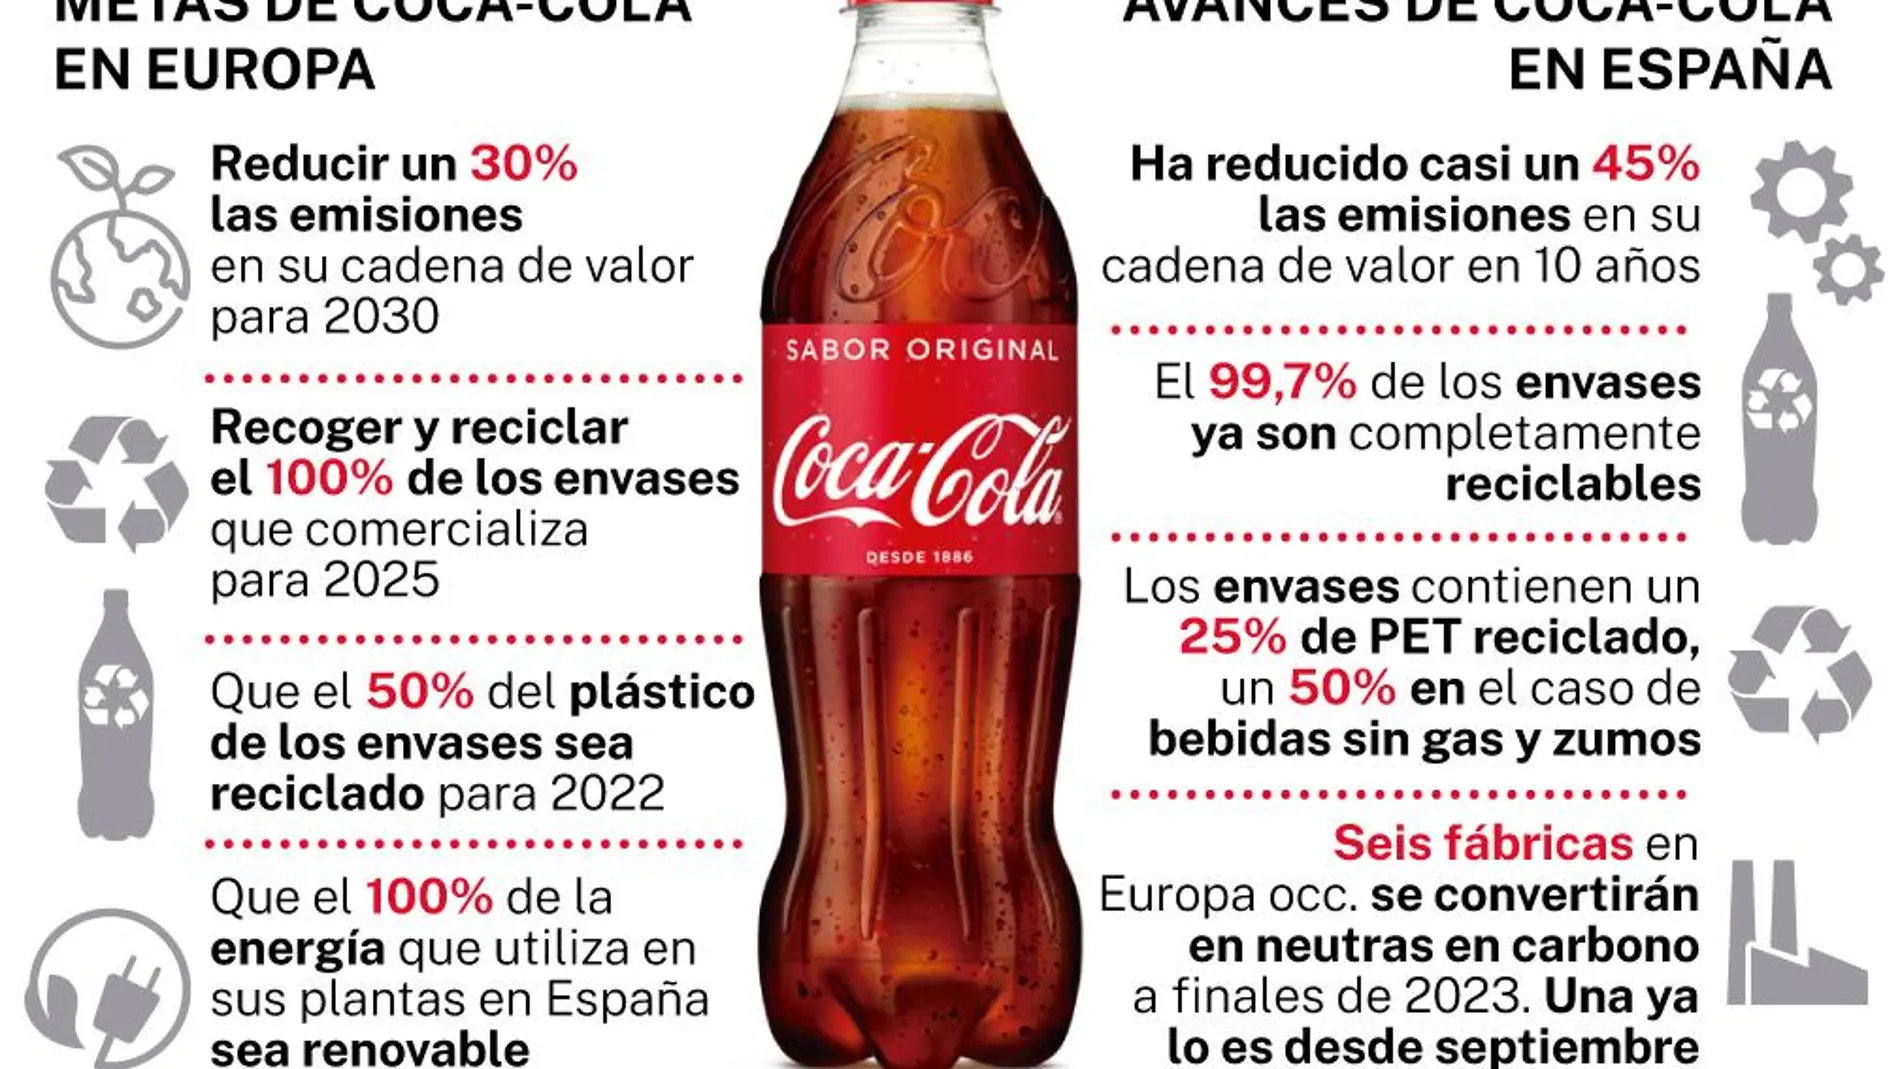 Metas y avances de Coca-Cola